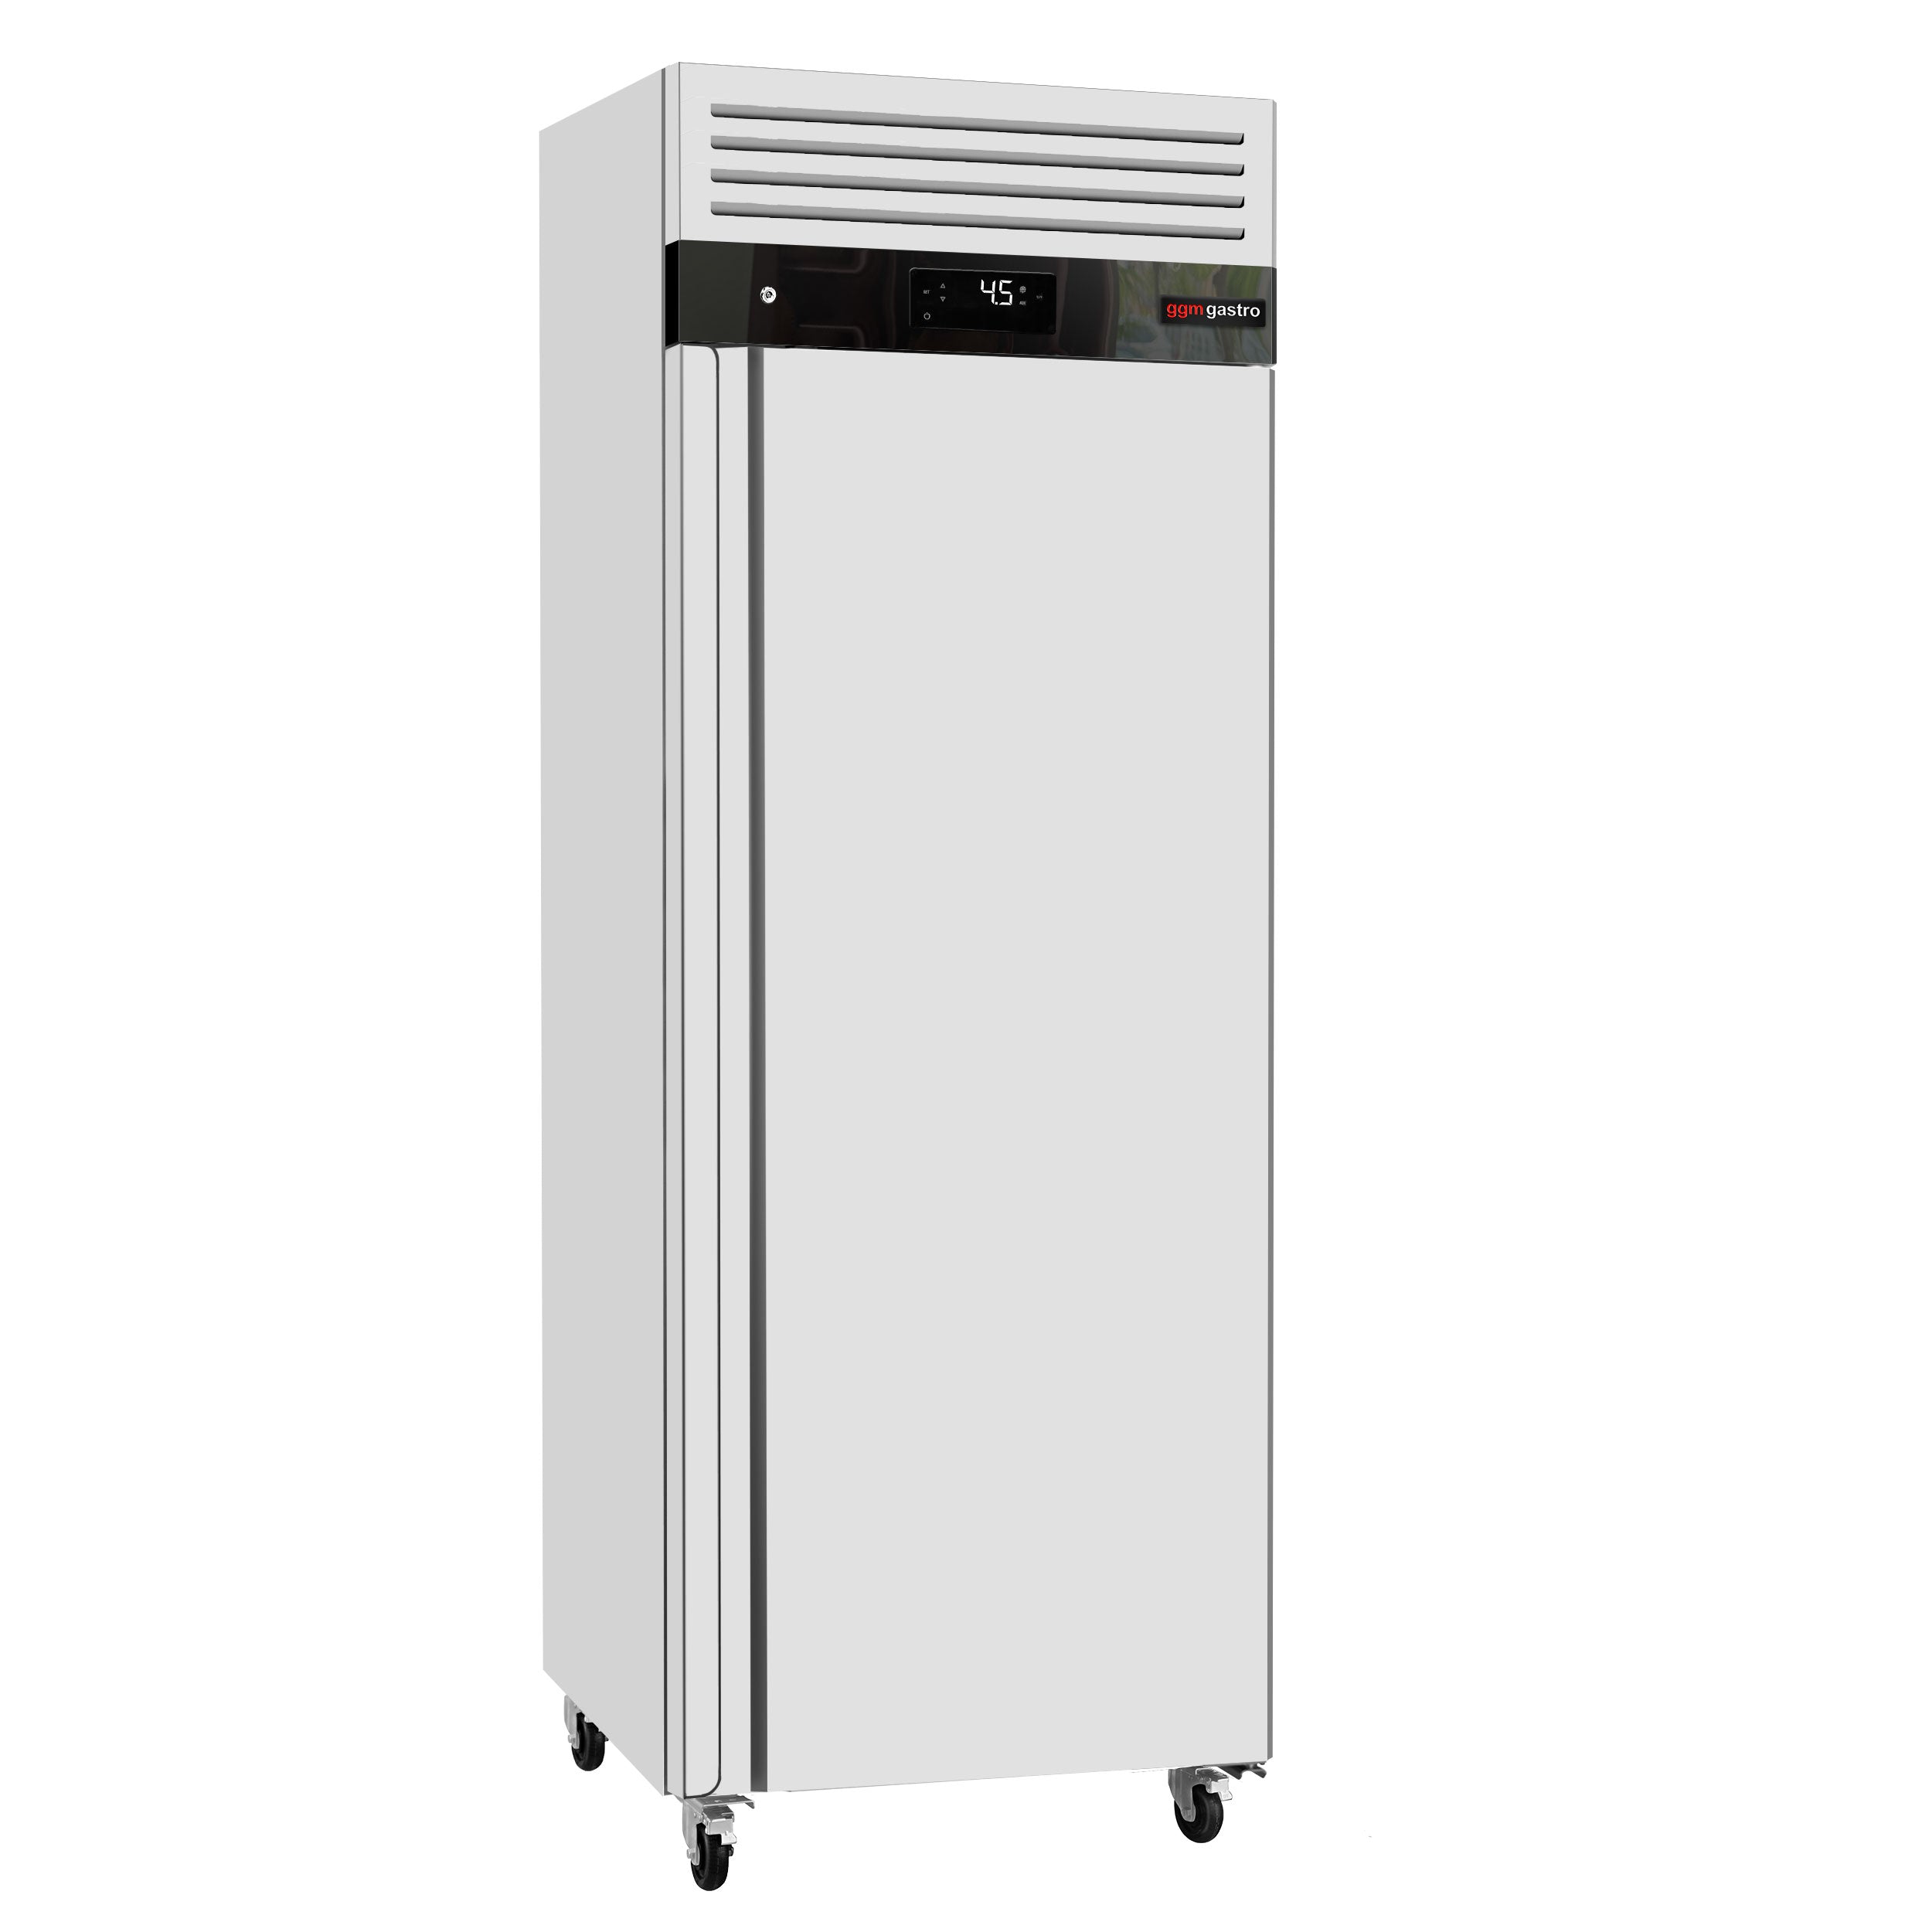 Køleskab ECO - GN 2/1 - 610 liter - 1 dør